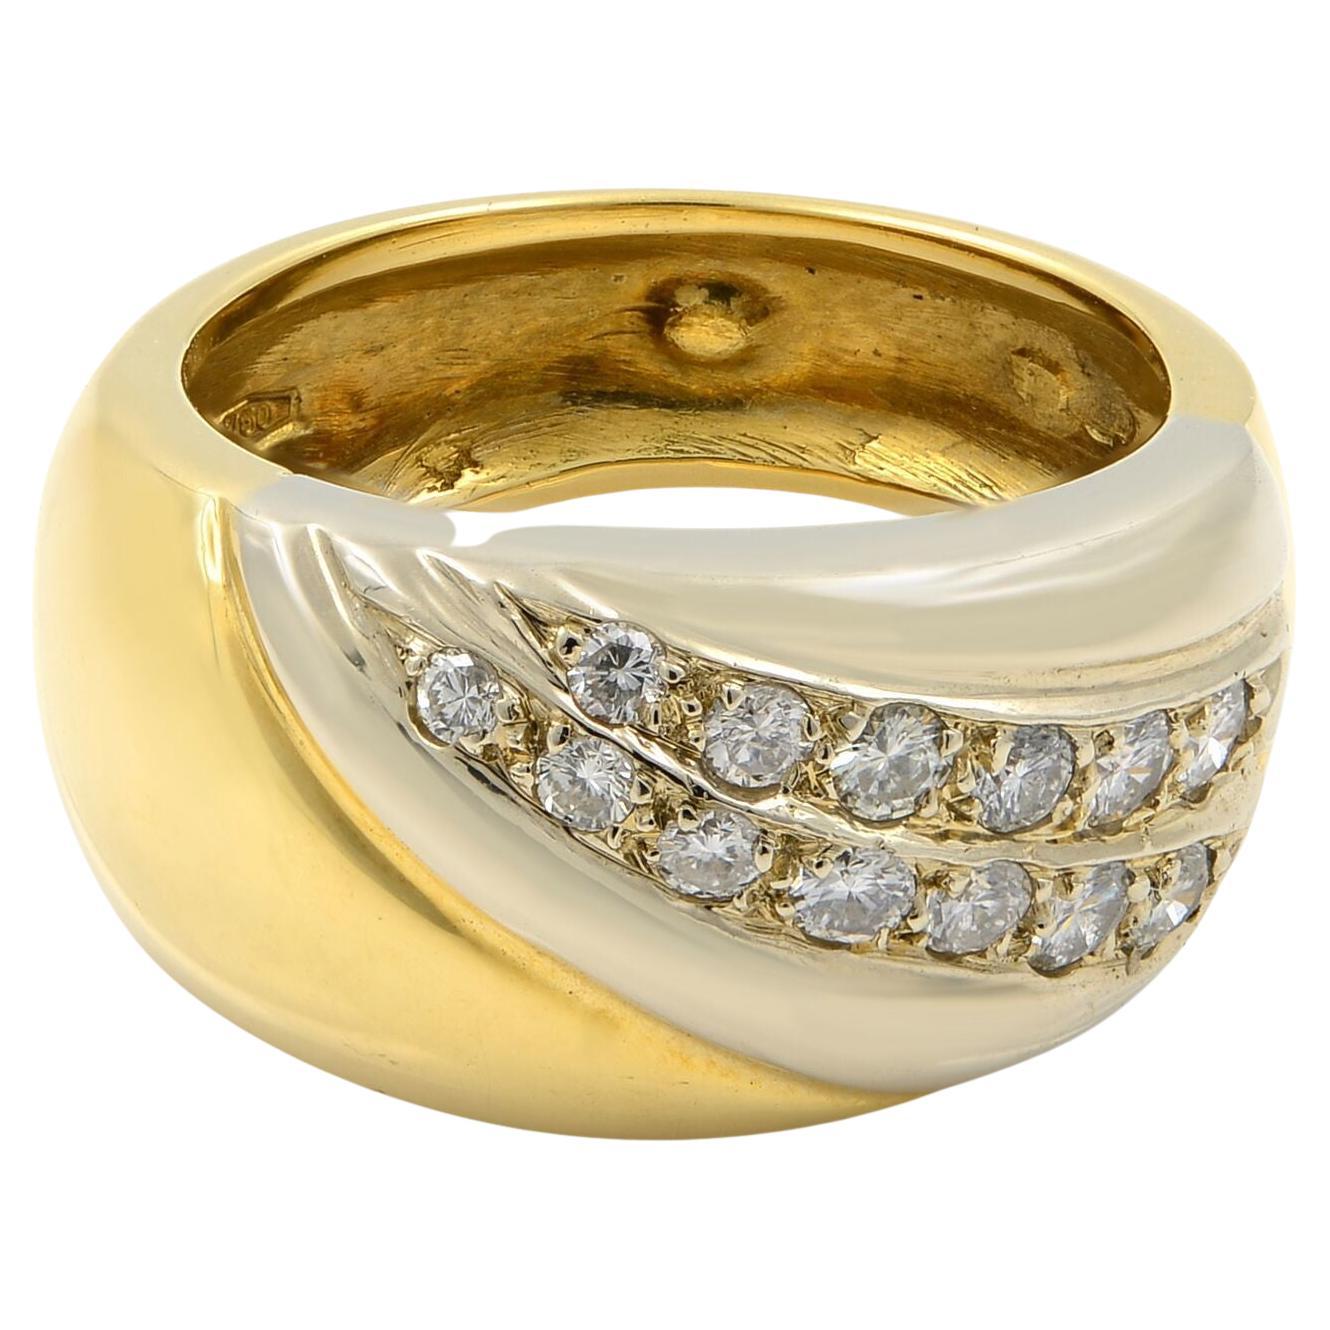 Rachel Koen, large bague pour femme en or jaune et blanc 18 carats avec diamants 0,26 carat poids total